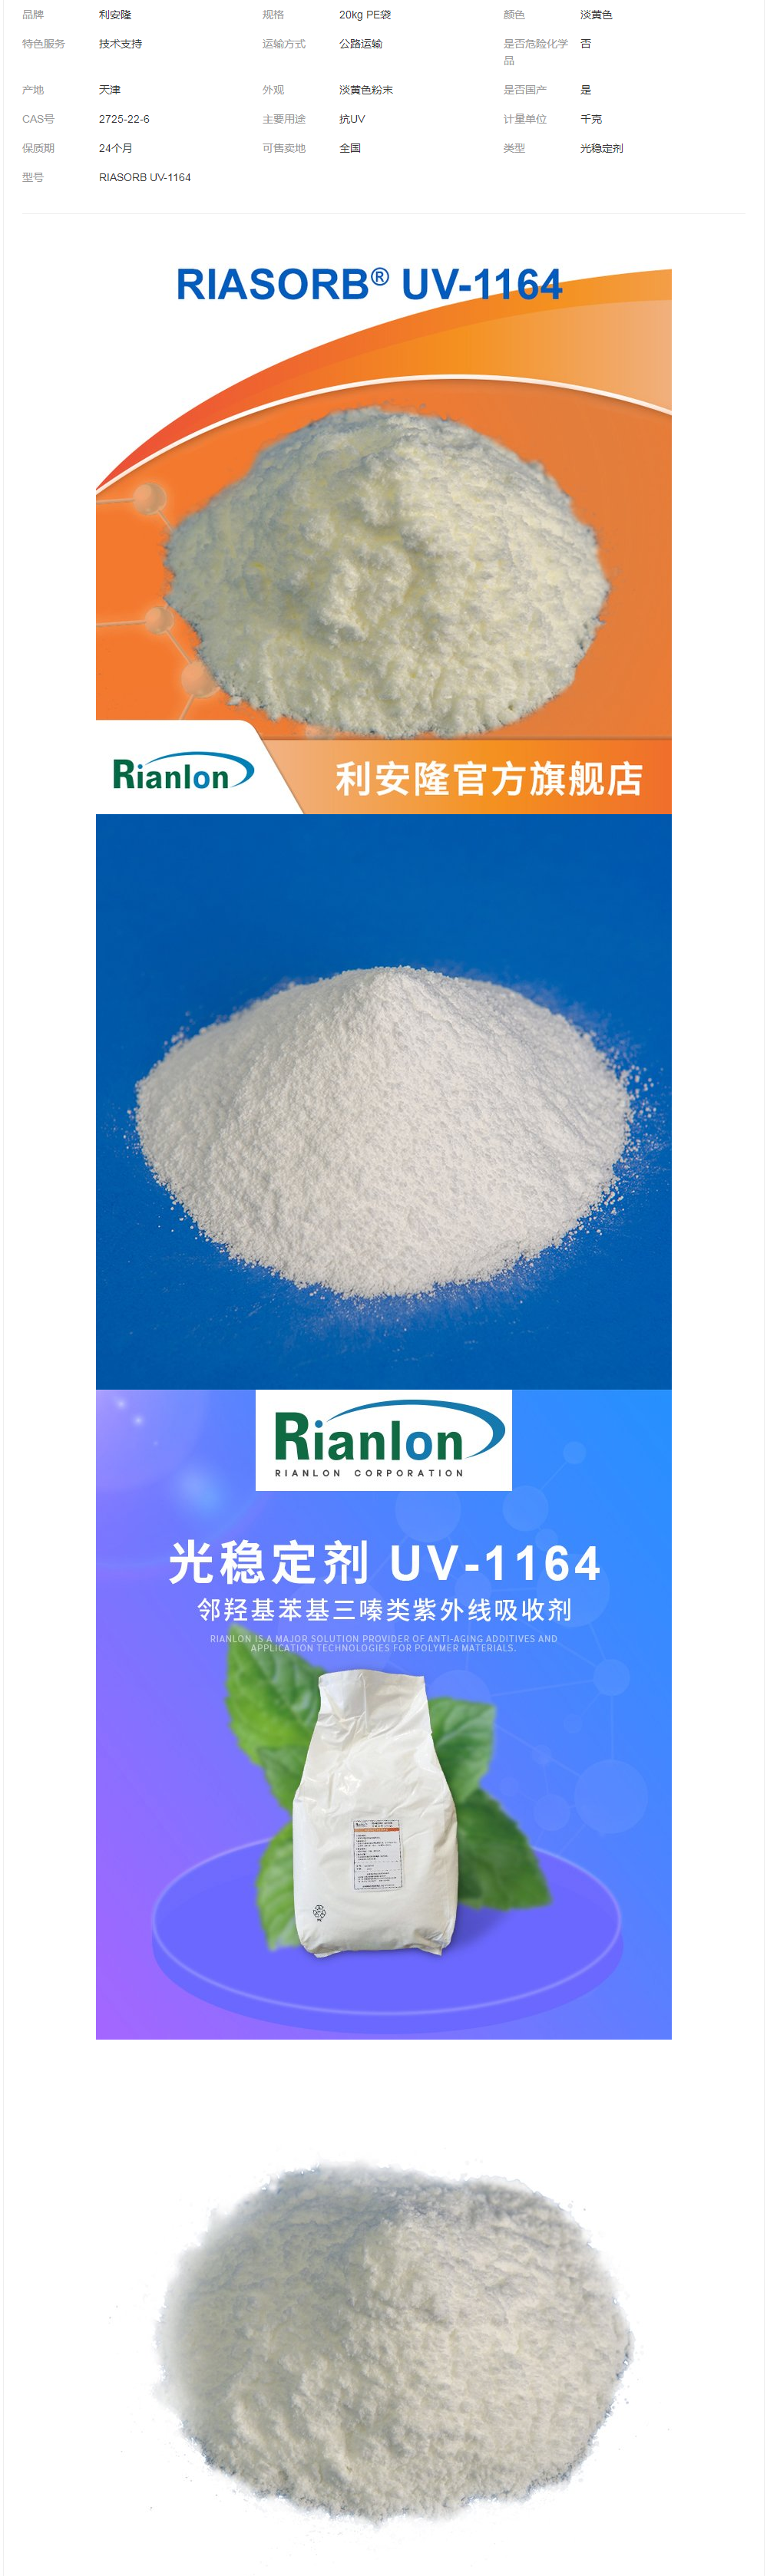 利安隆光稳定剂UV-1164光敏感材料用三嗪类紫外线吸收剂uv1164.png